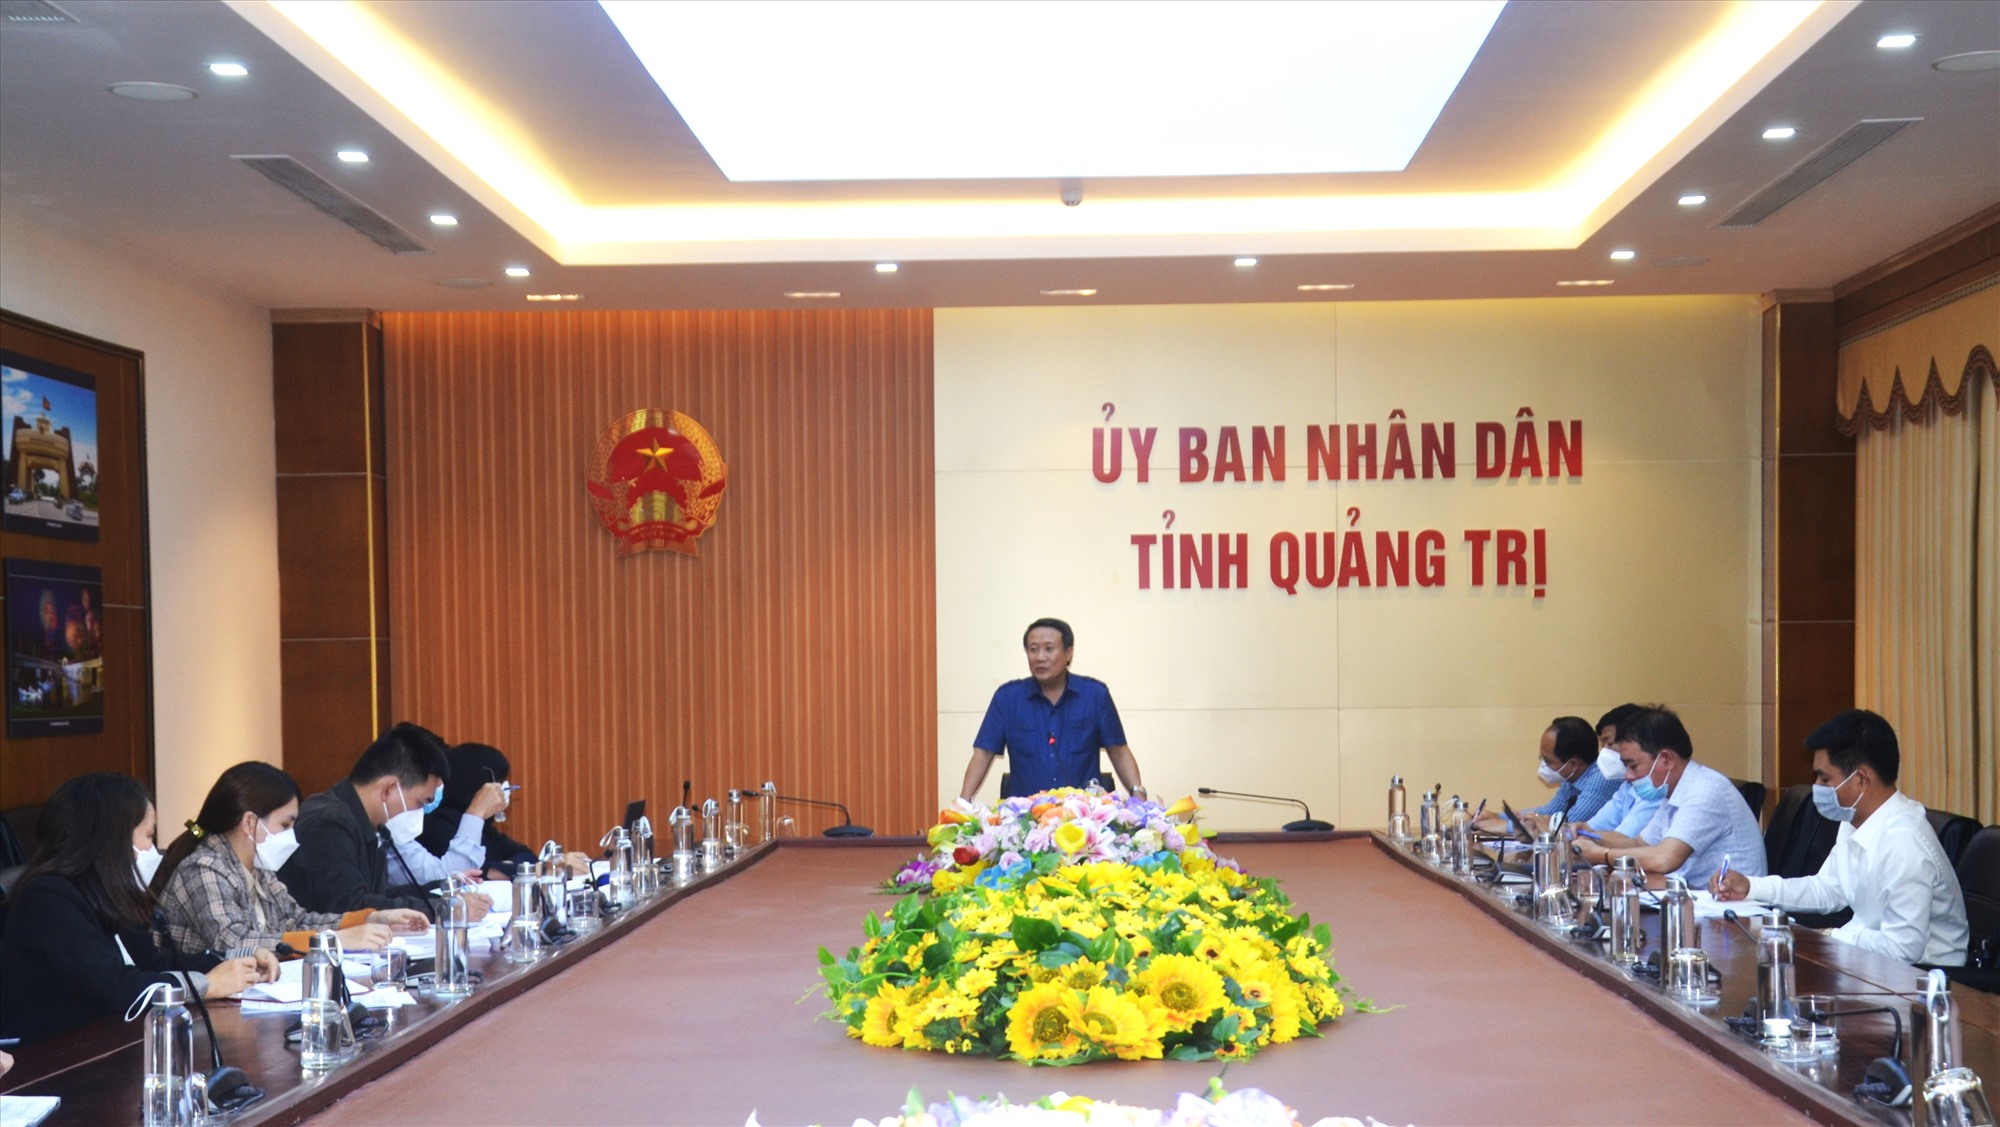 Phó Chủ tịch Thường trực UBND tỉnh Hà Sỹ Đồng phát biểu tại buổi làm việc - Ảnh: S.H